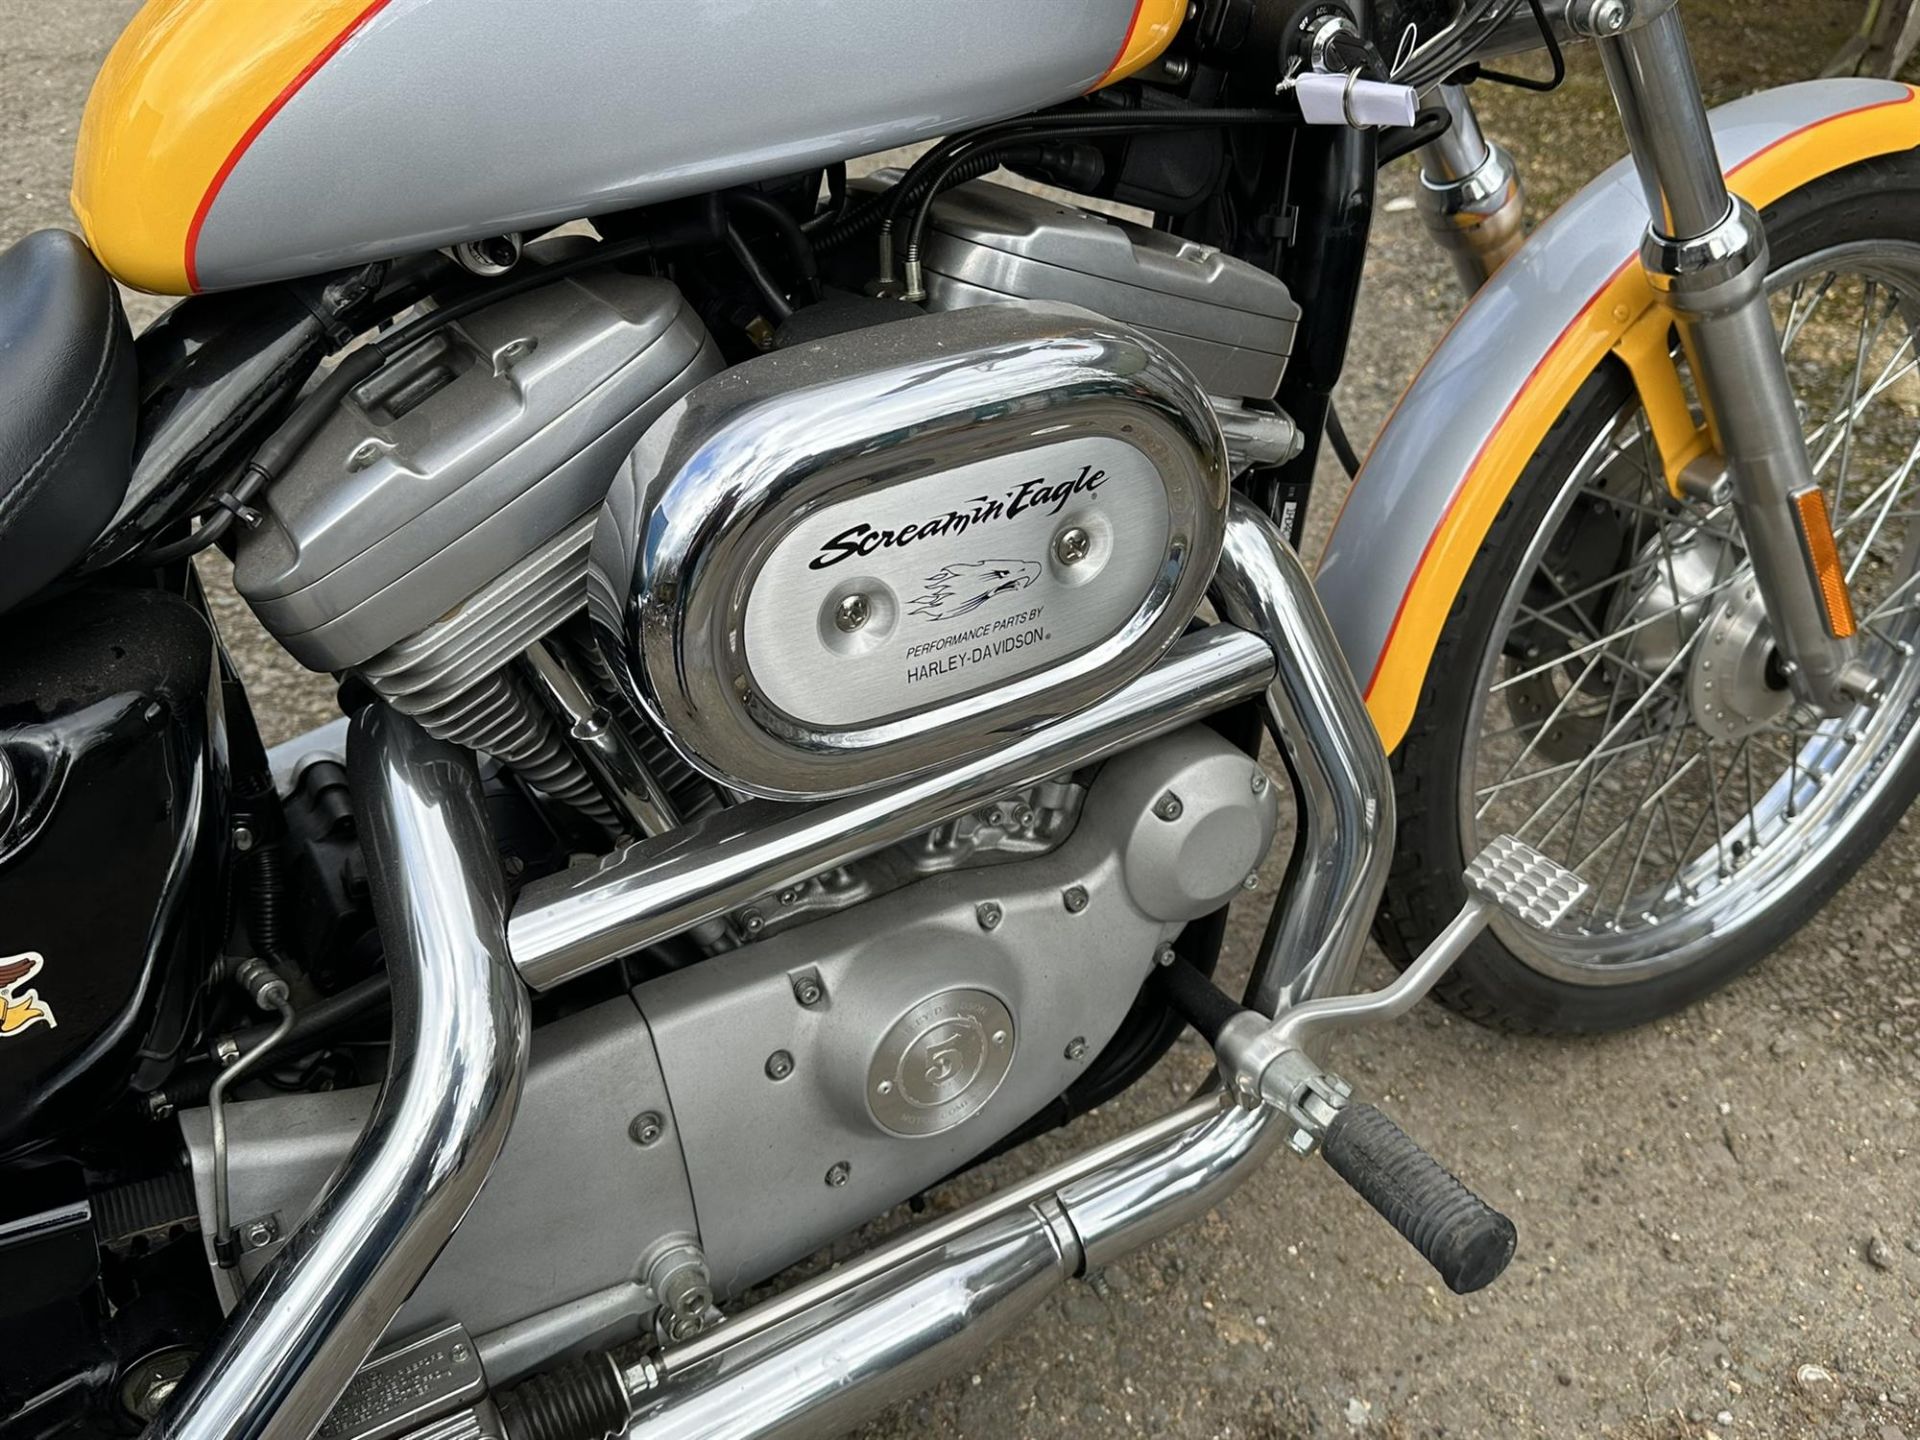 2000 Harley Davidson XL883c Sportster 883cc - Bild 3 aus 7